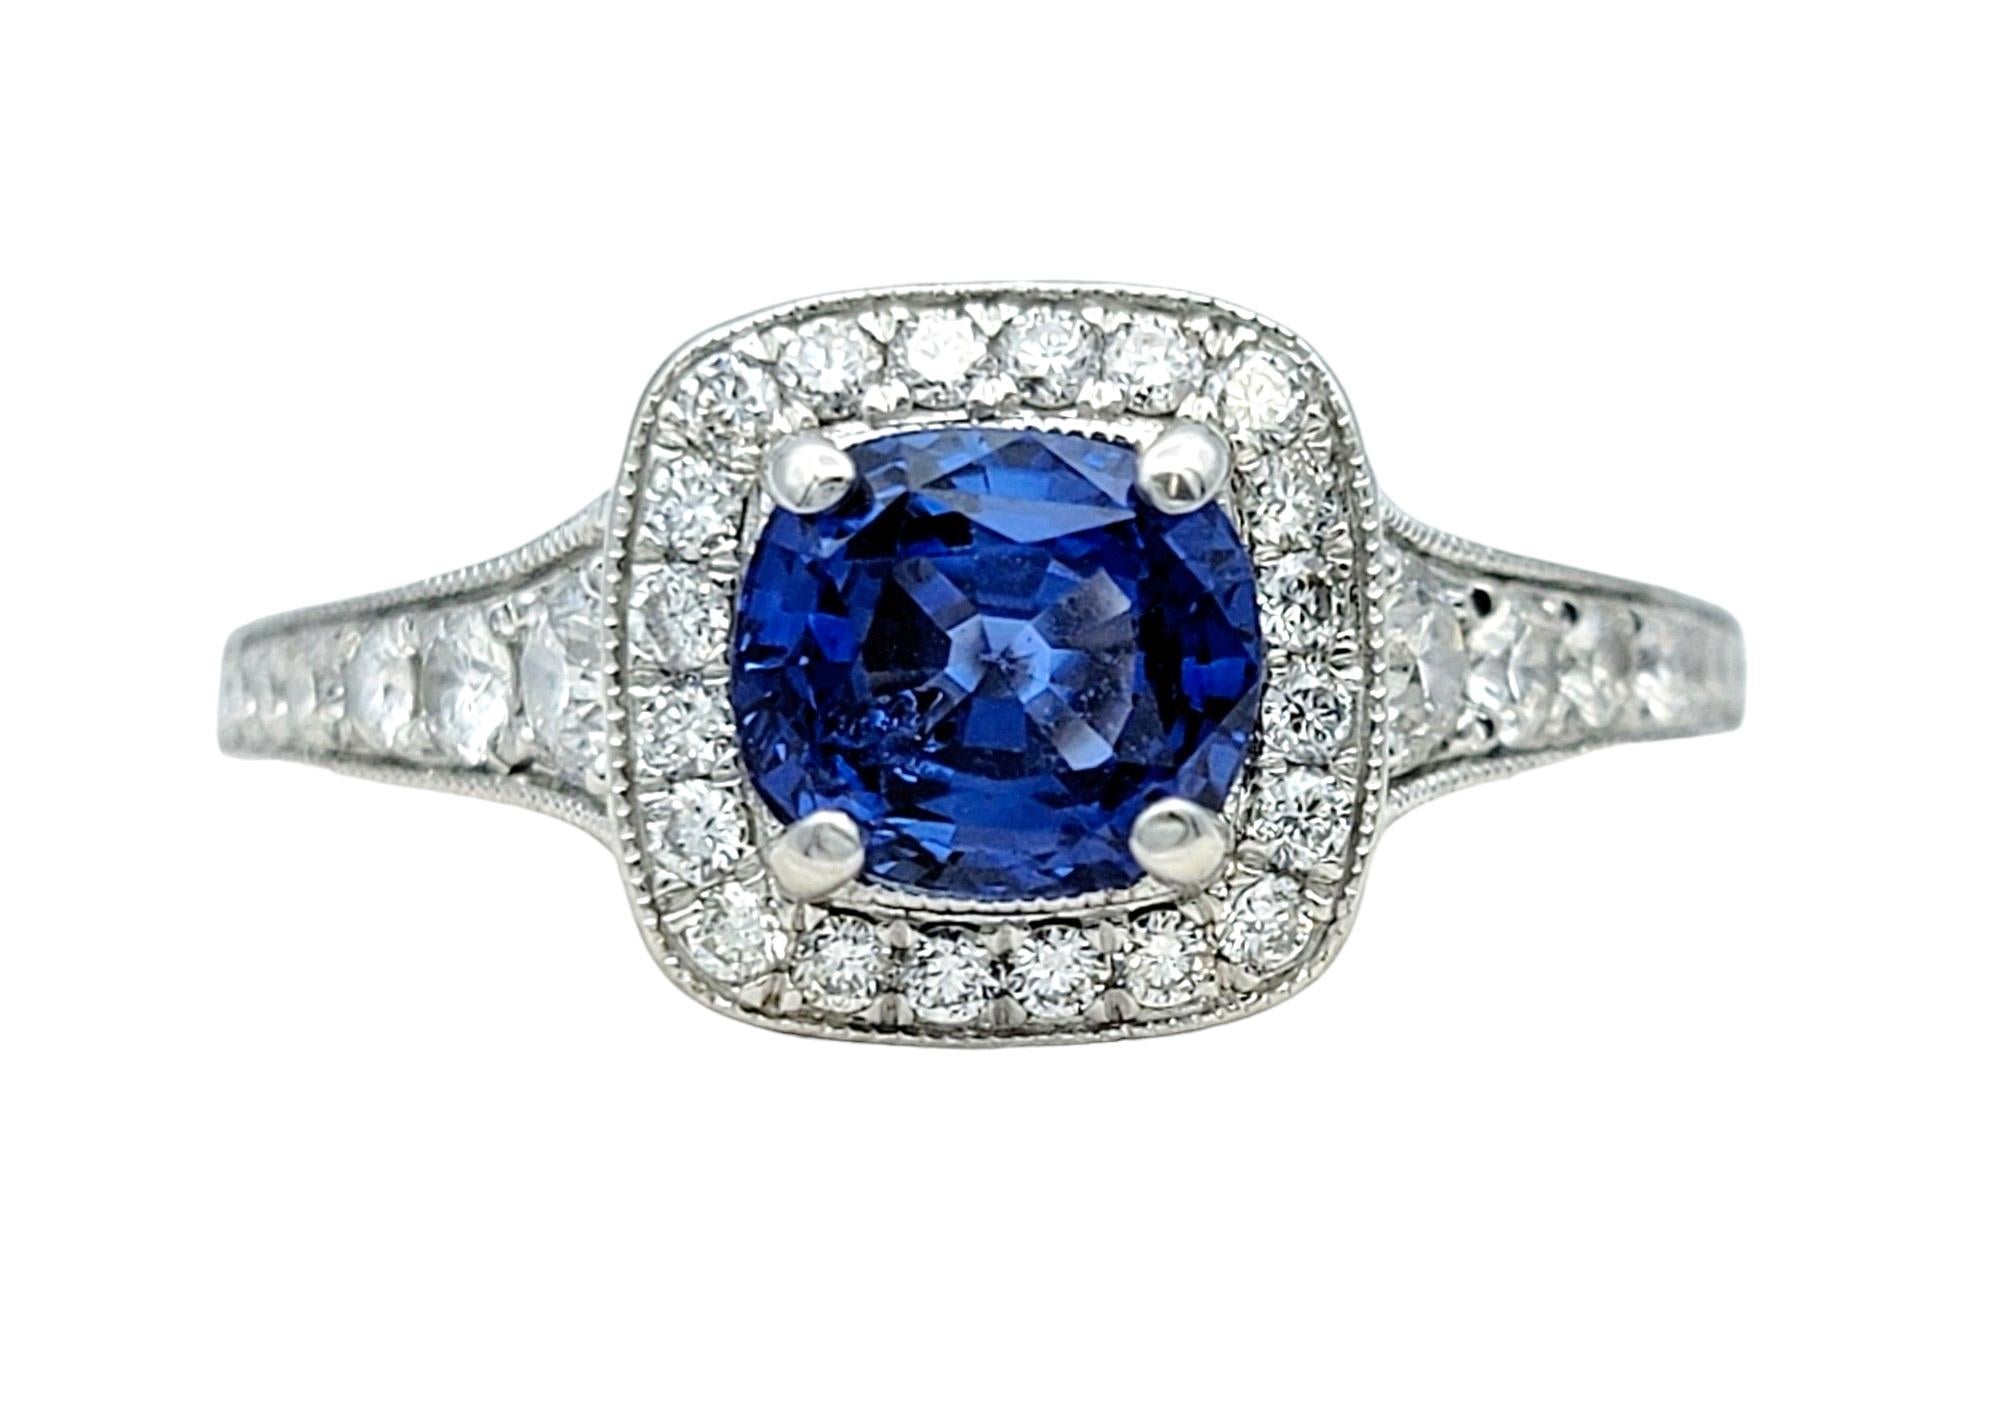 Ringgröße: 9

Dieser atemberaubende Cocktailring mit blauem Saphir und Diamanten im Halo, gefasst in strahlendem 14-karätigem Weißgold, ist ein brillantes Schmuckstück, das zeitlose Eleganz und Raffinesse ausstrahlt. In der Mitte des Rings befindet